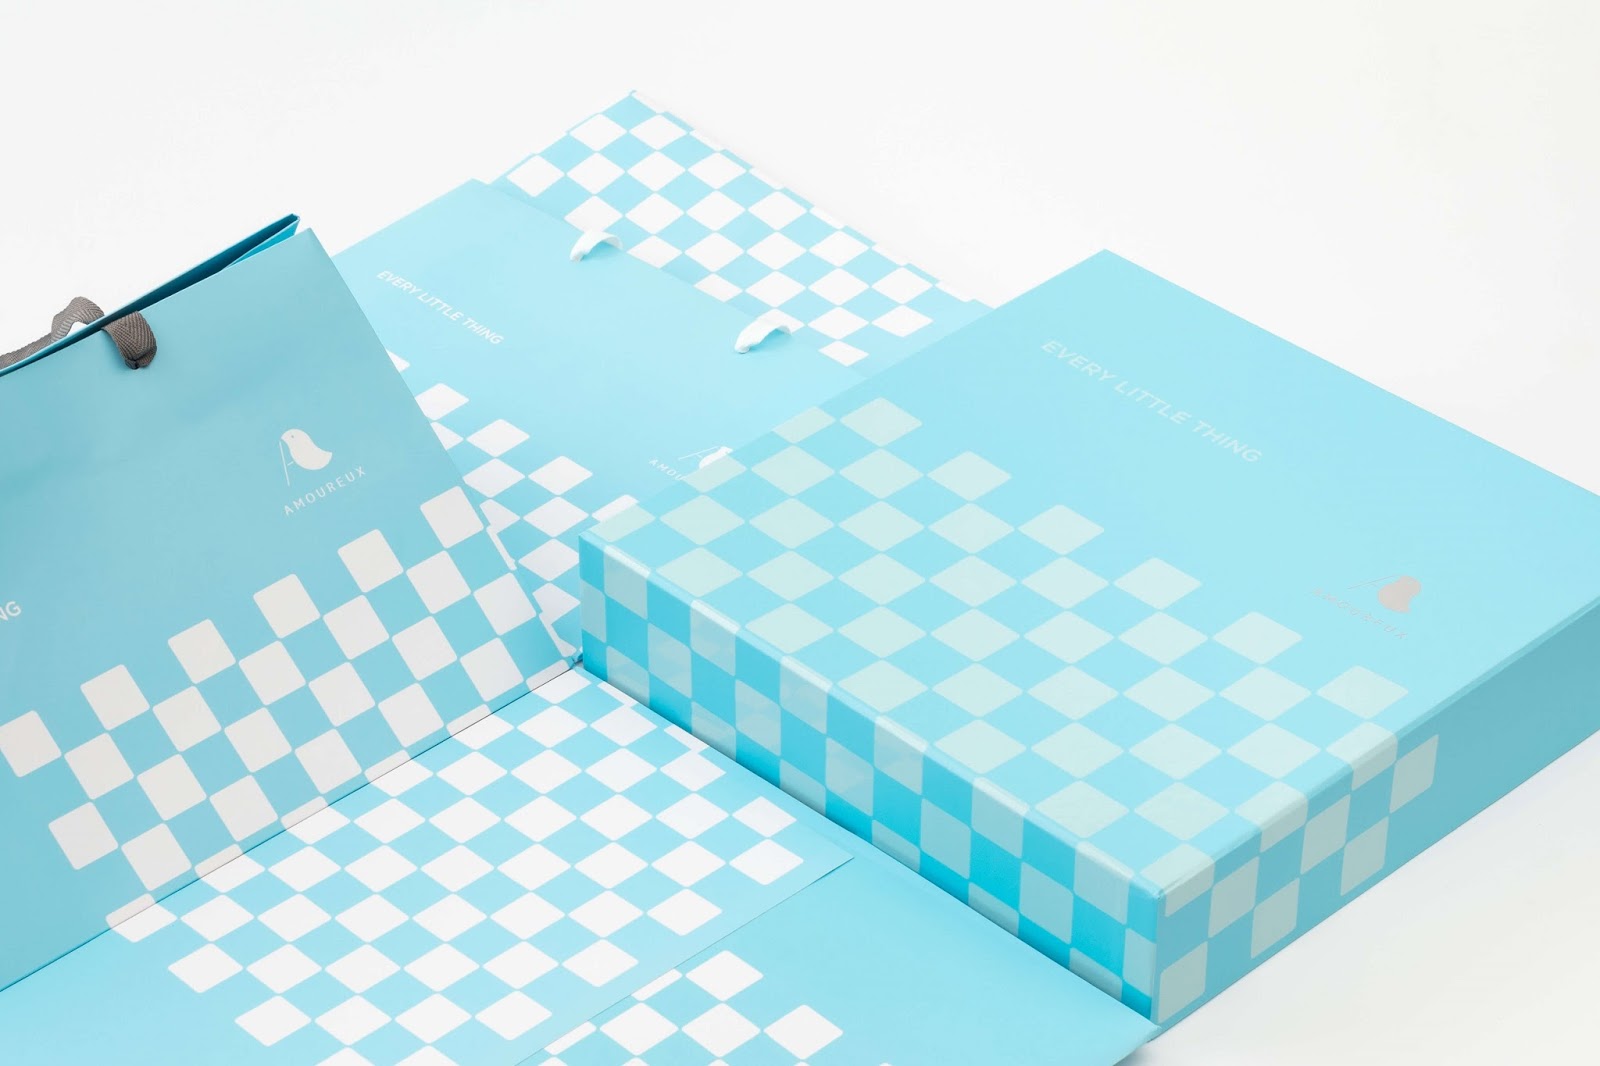 糕点礼盒西安oe欧亿体育app官方下载
品牌包装设计